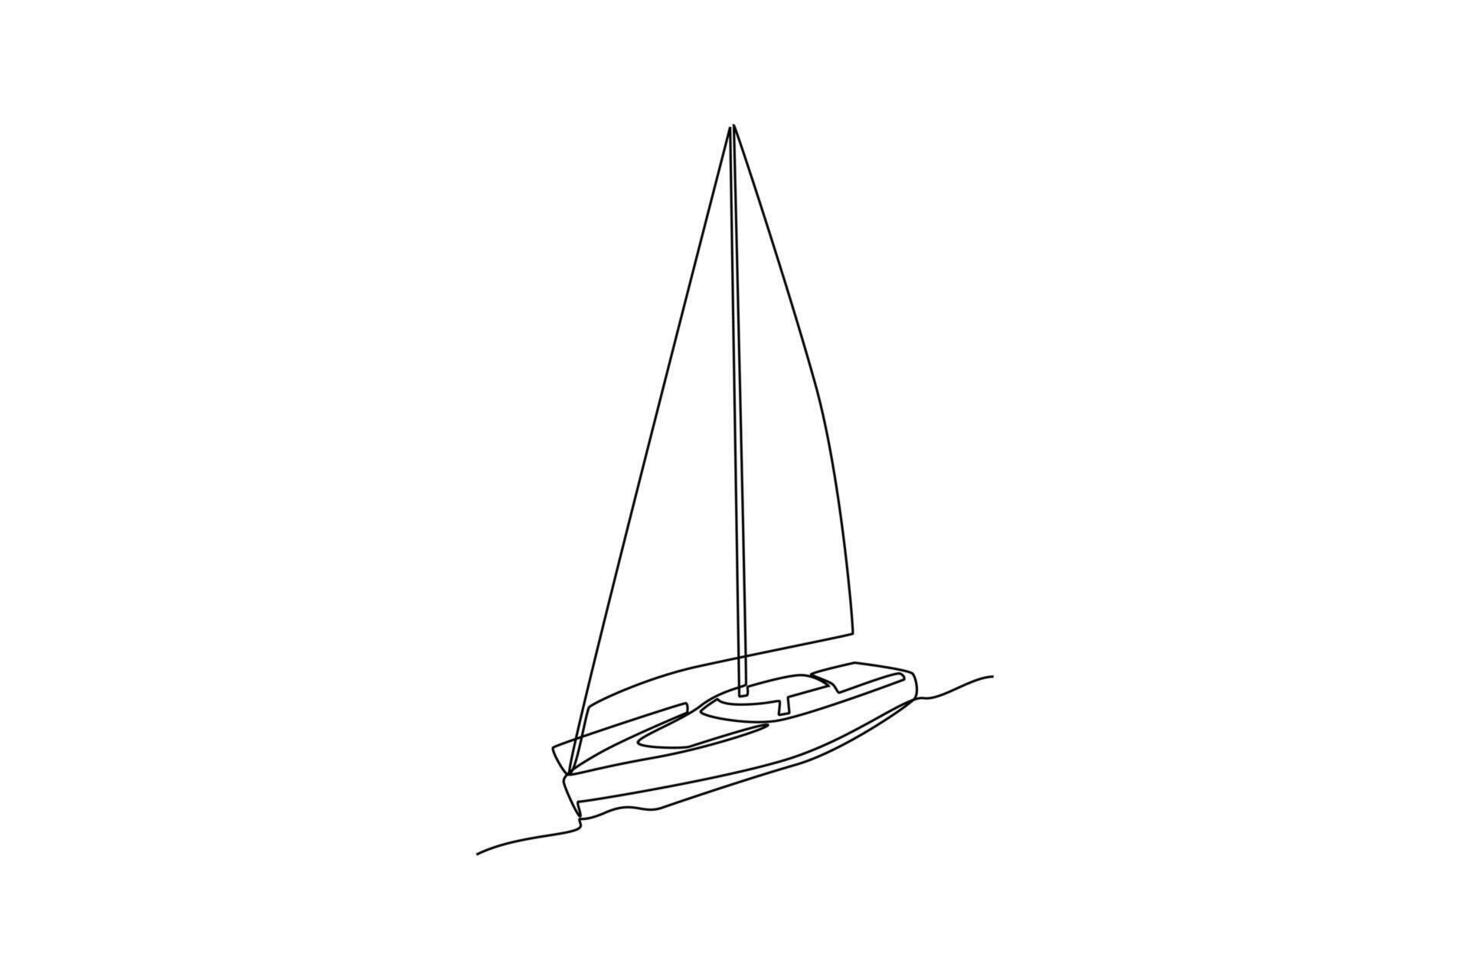 uno continuo línea dibujo de mar transporte concepto. garabatear vector ilustración en sencillo lineal estilo.